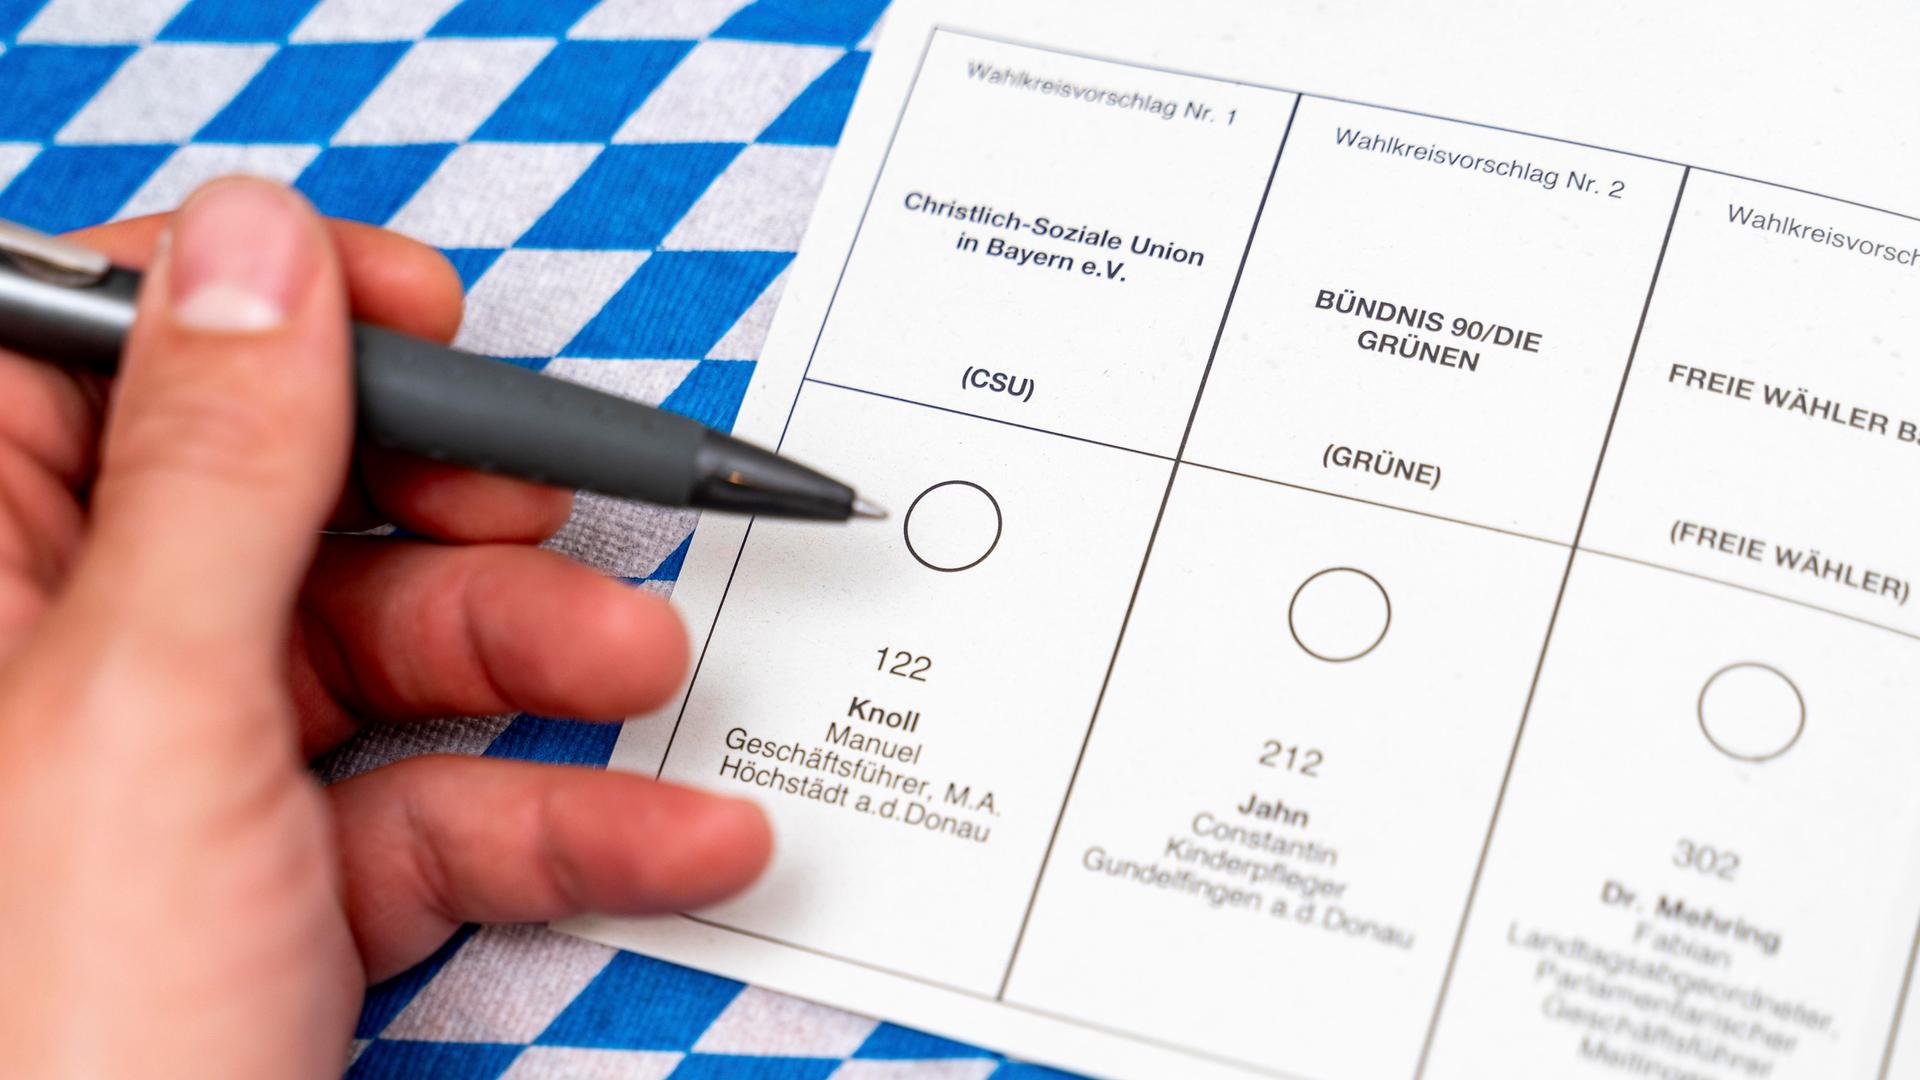 Stimm-Zettel bei der Brief-Wahl in Bayern. Eine Hand hält einen Kugel-Schreiber vor den Stimm-Zettel. Dahinter sieht man die Flagge von Bayern in Blau und Weiß.